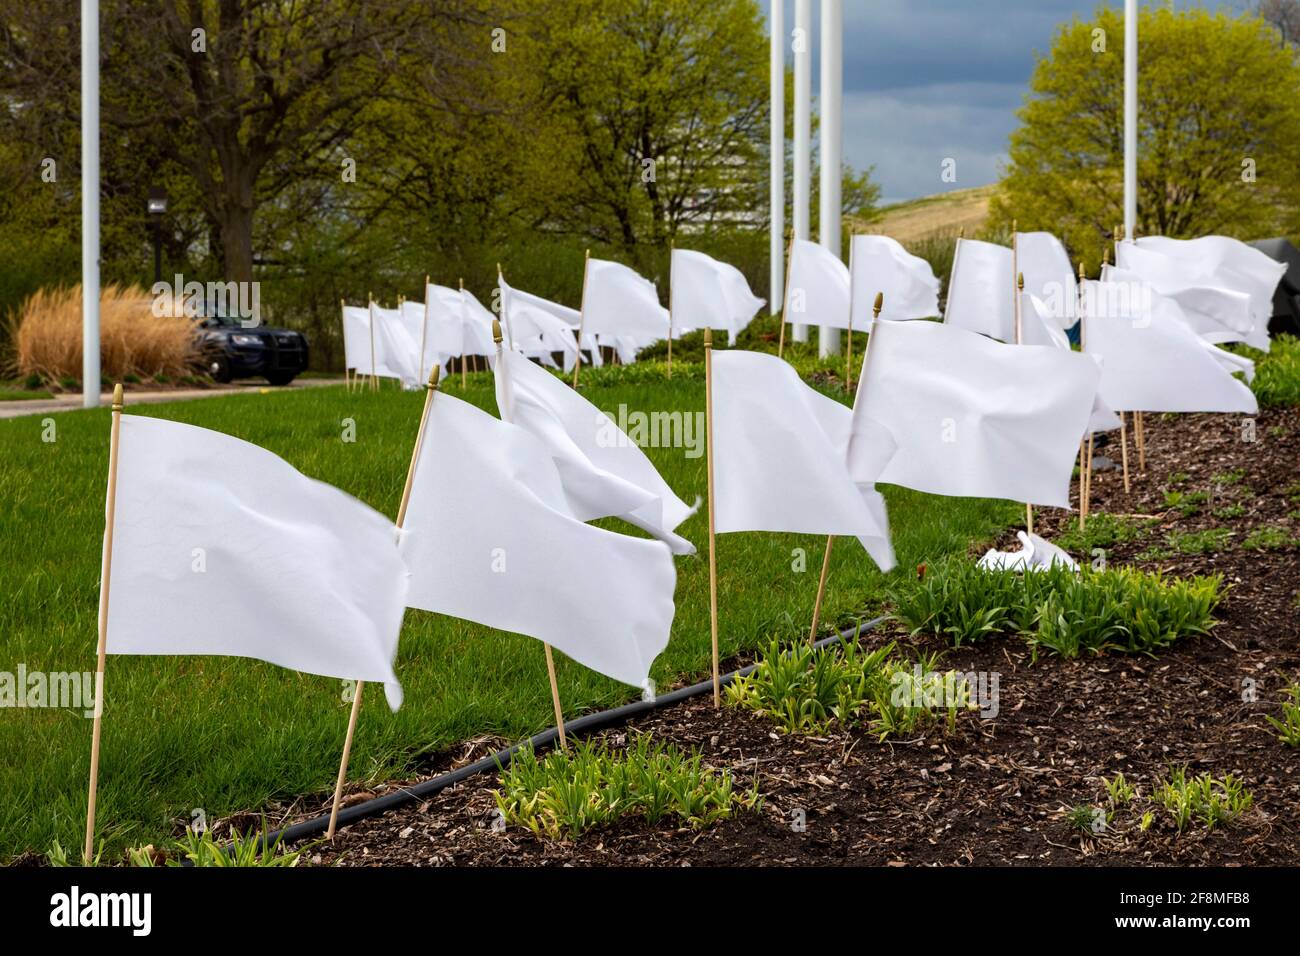 Troy, Michigan - bandiere bianche fuori del municipio rappresentano i residenti di Troia che sono morti nella pandemia del coronavirus. Foto Stock